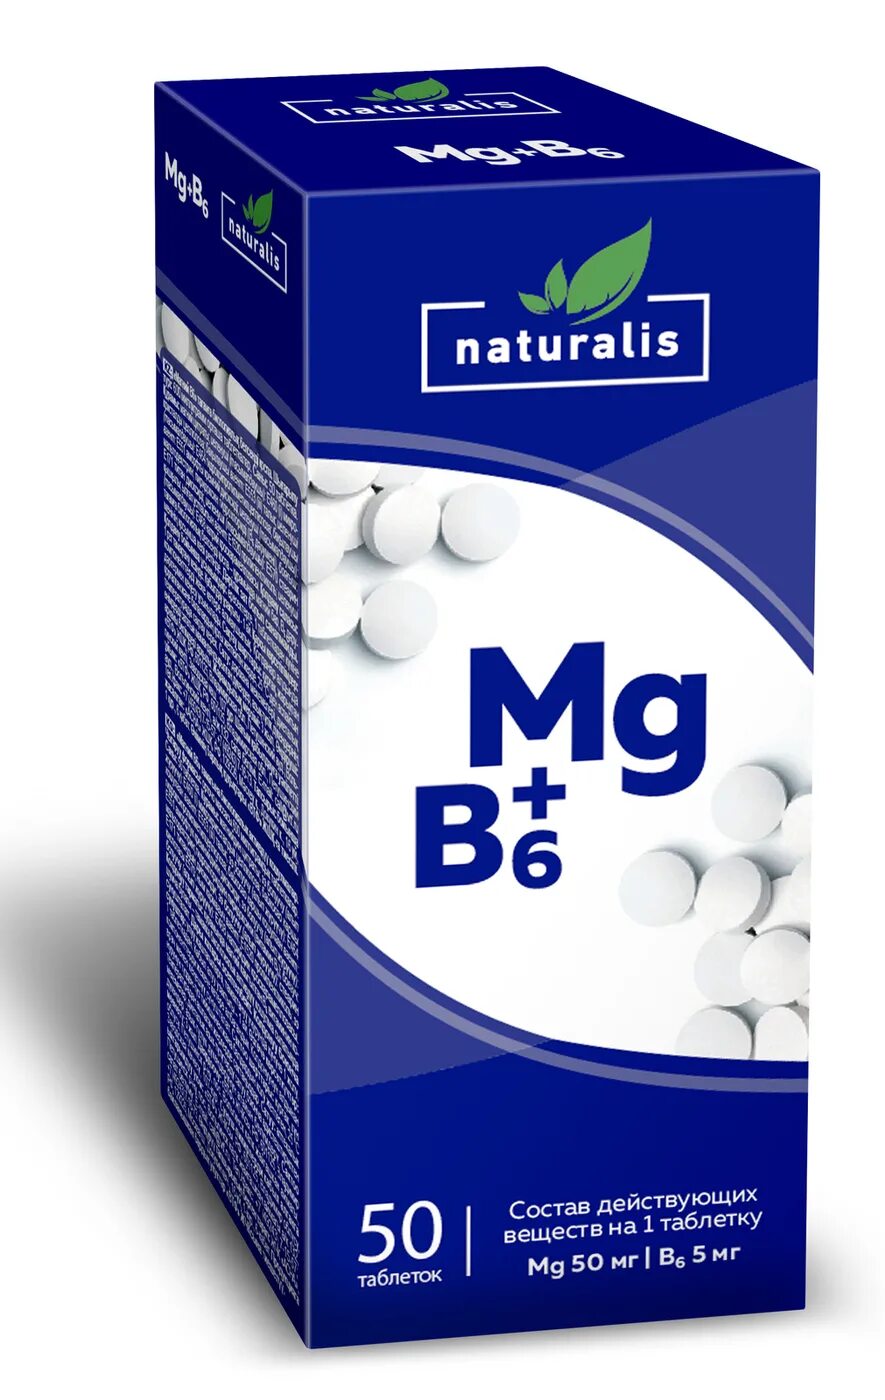 Биологически активная добавка магний в6 таблетки. Магний б6 Натуралис. БАД MG b6. Магний в6 n50 табл.